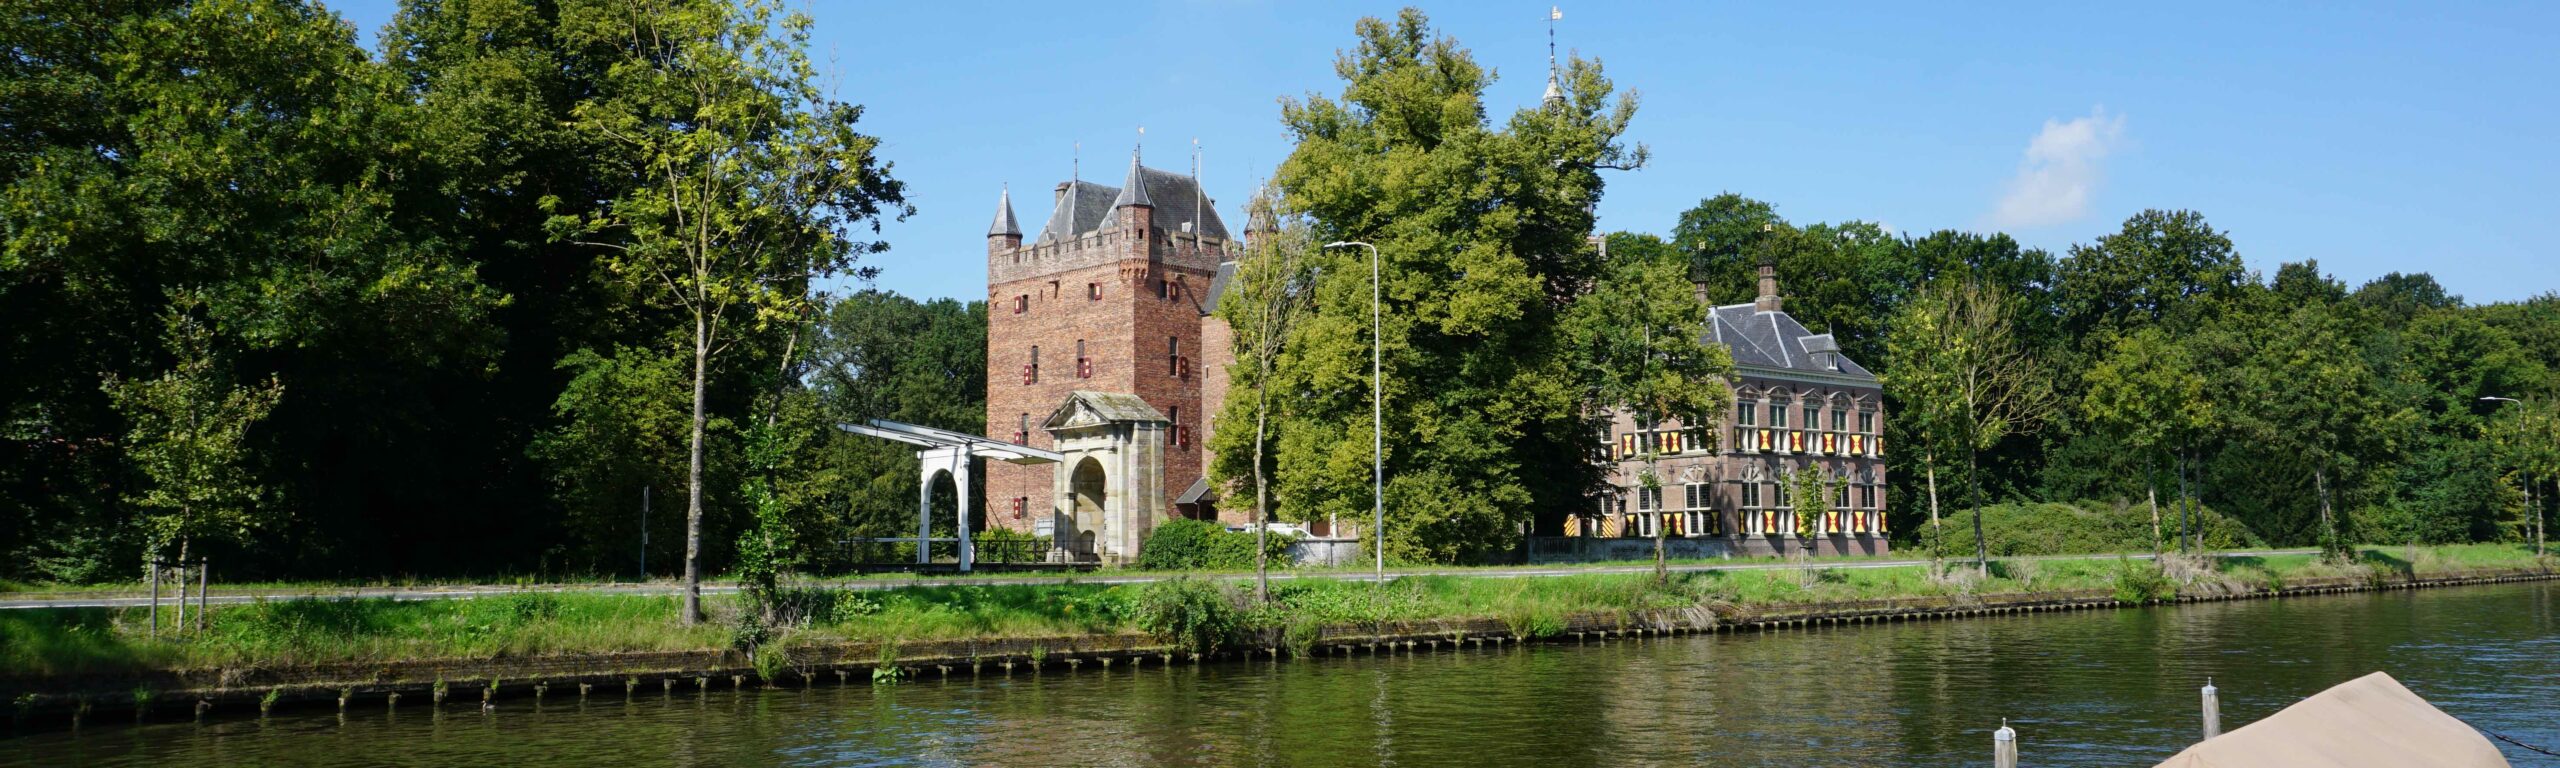 kasteel Nijenrode aan de Vecht in Breukelen